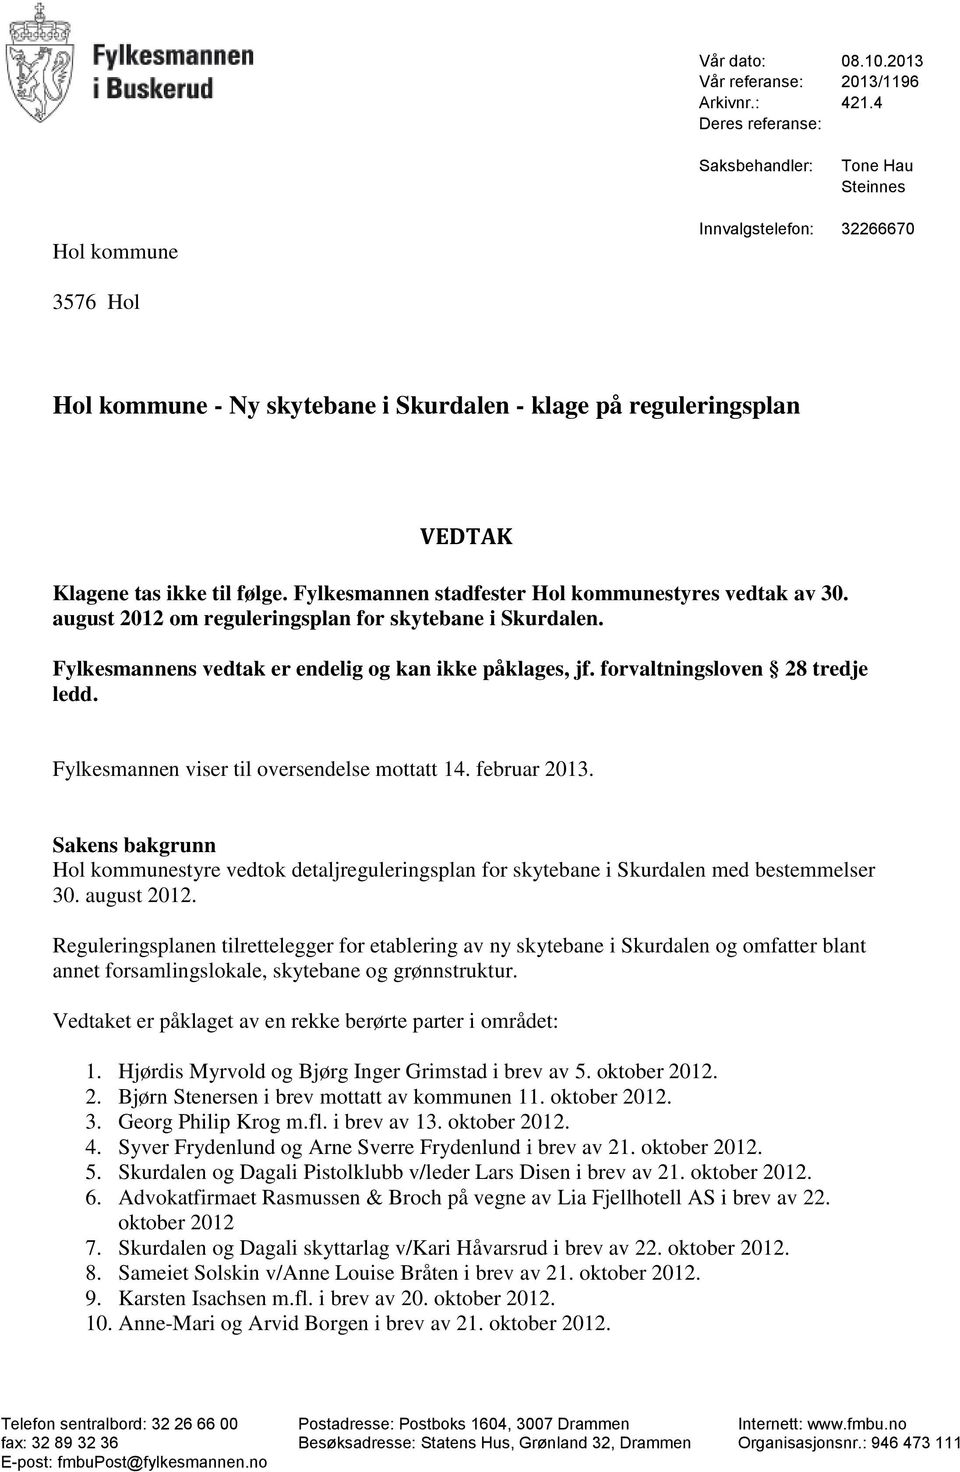 Fylkesmannen stadfester Hol kommunestyres vedtak av 30. august 2012 om reguleringsplan for skytebane i Skurdalen. Fylkesmannens vedtak er endelig og kan ikke påklages, jf.